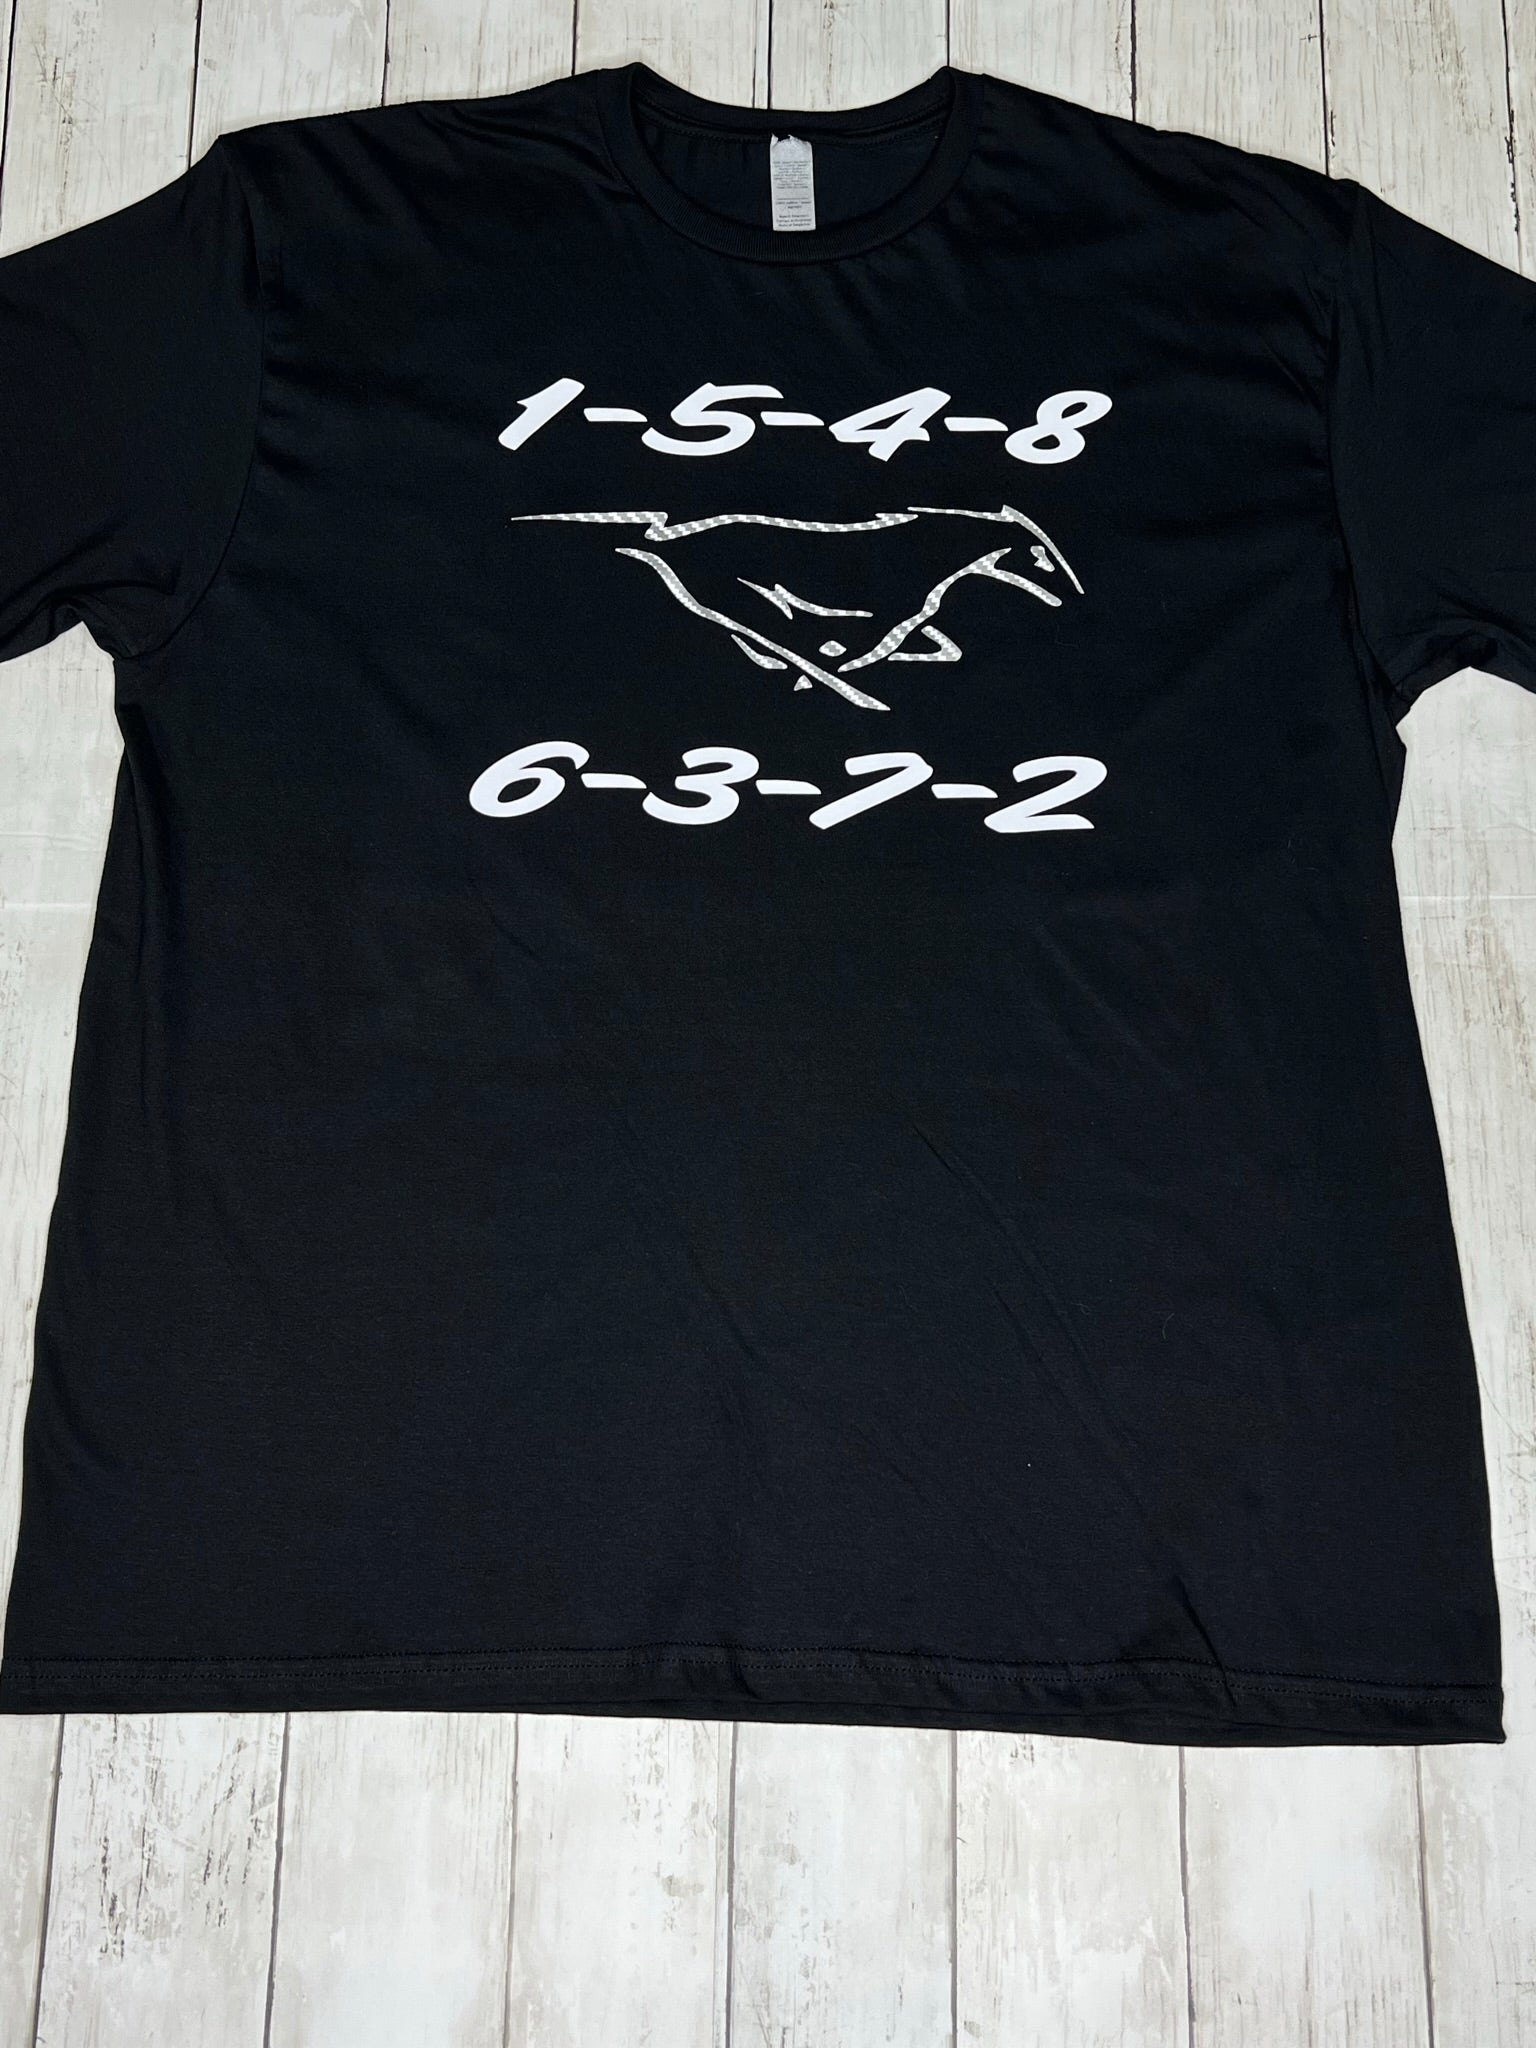 Firing Coyote order Werx Tee Mustang Shirt t-Shirt –